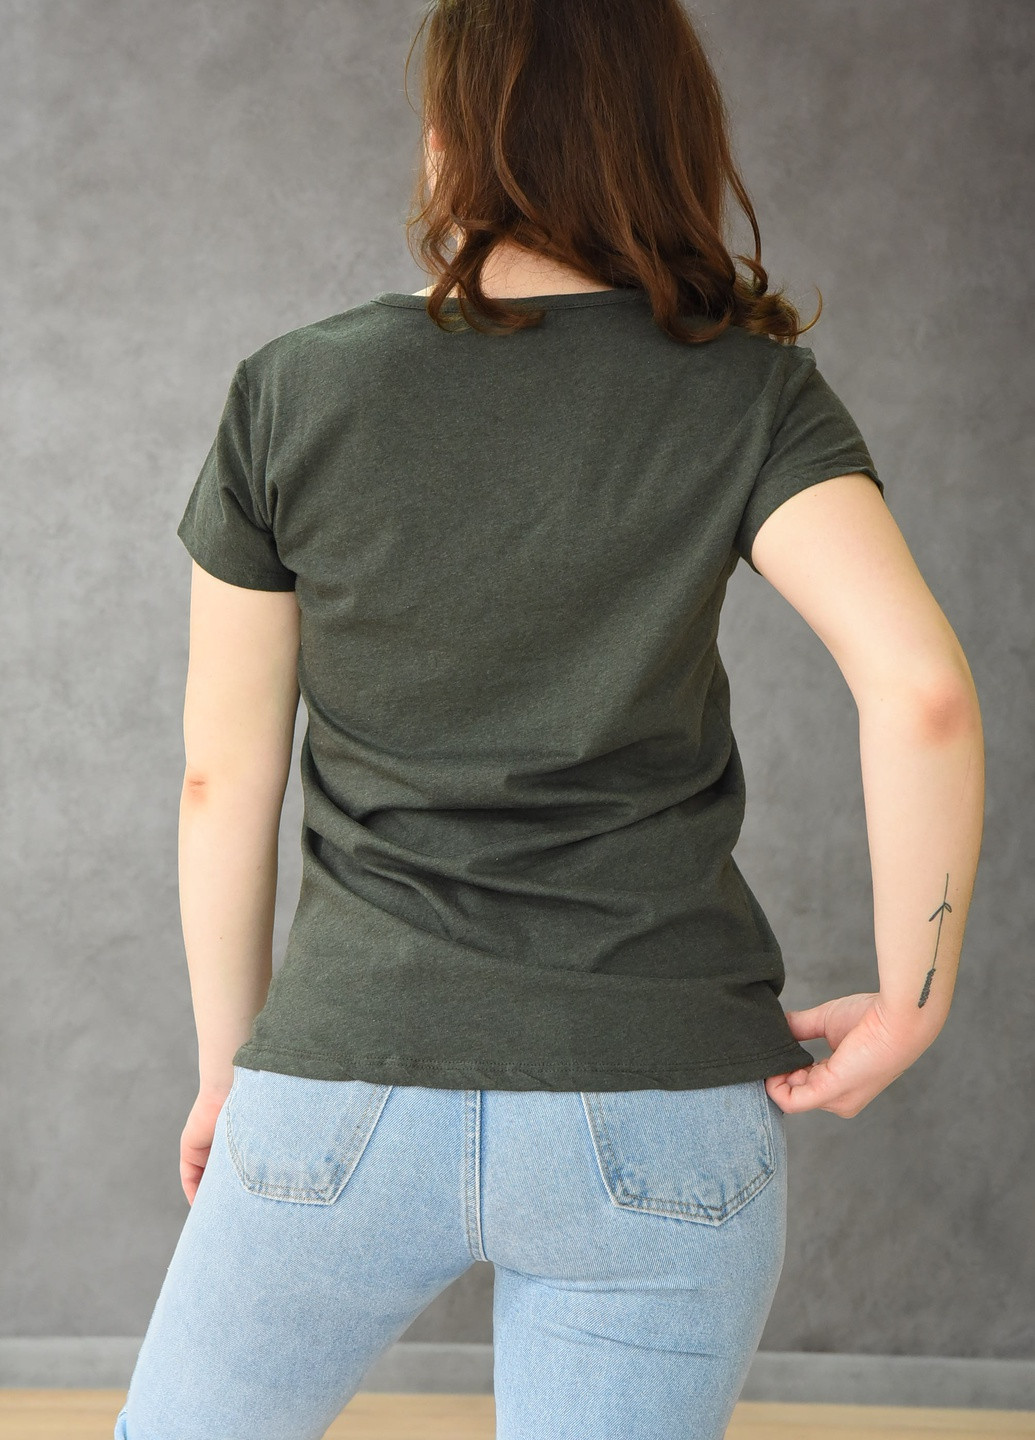 Хаки (оливковая) летняя футболка женская цвета хаки Let's Shop